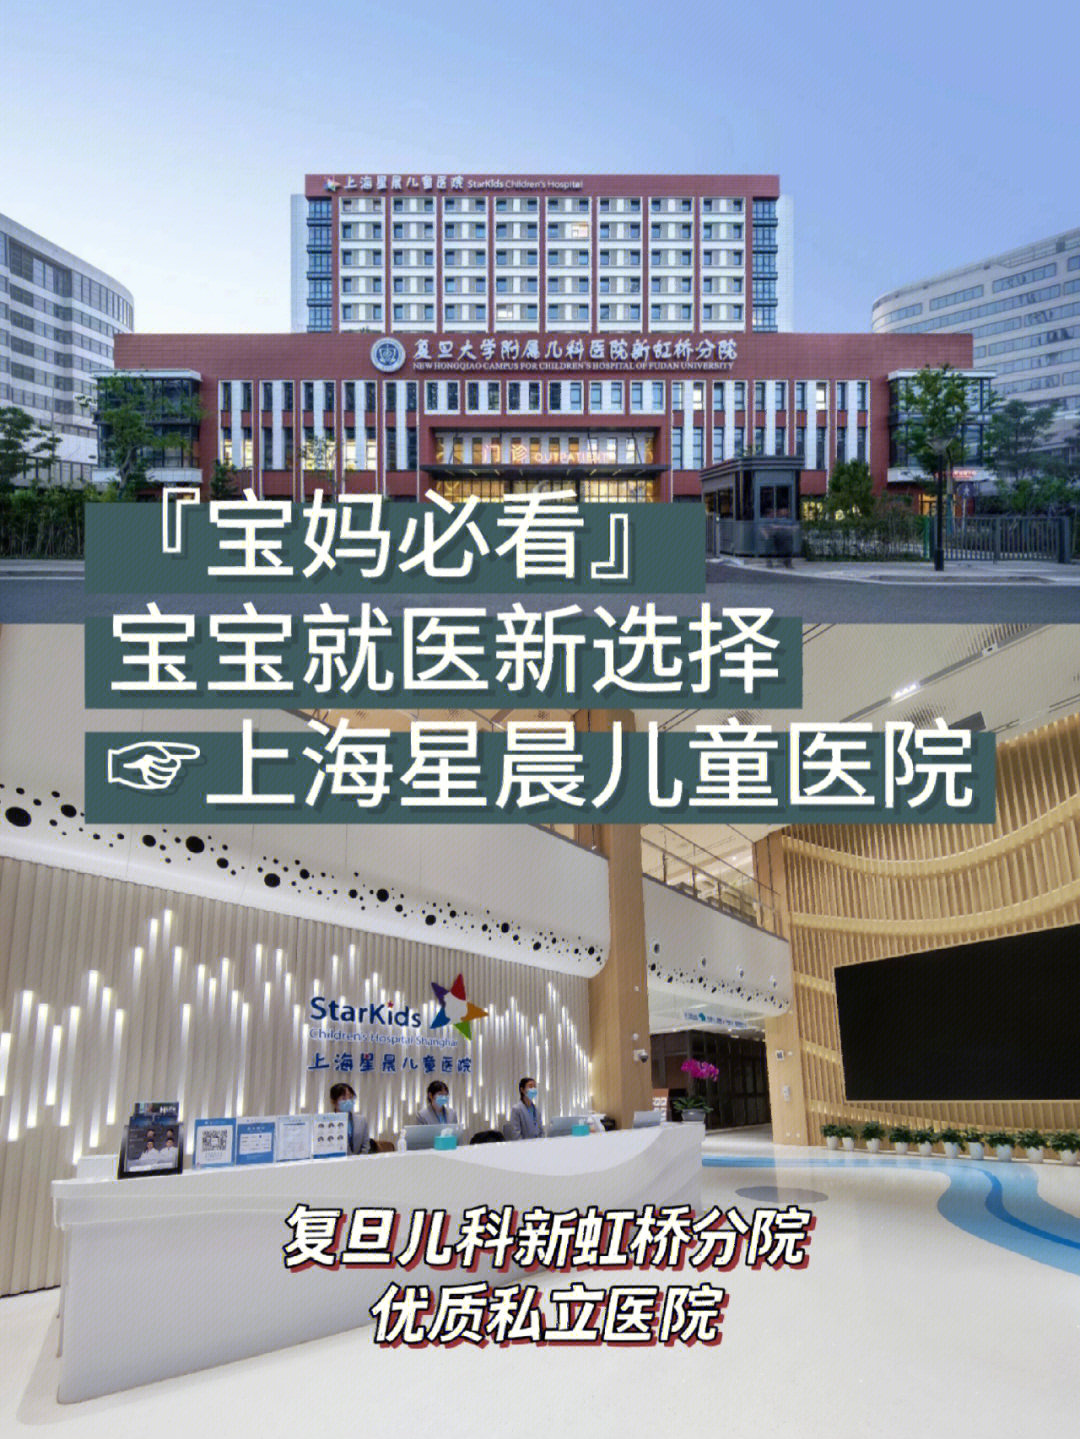 上海星晨儿童医院74复旦儿科新虹桥分院